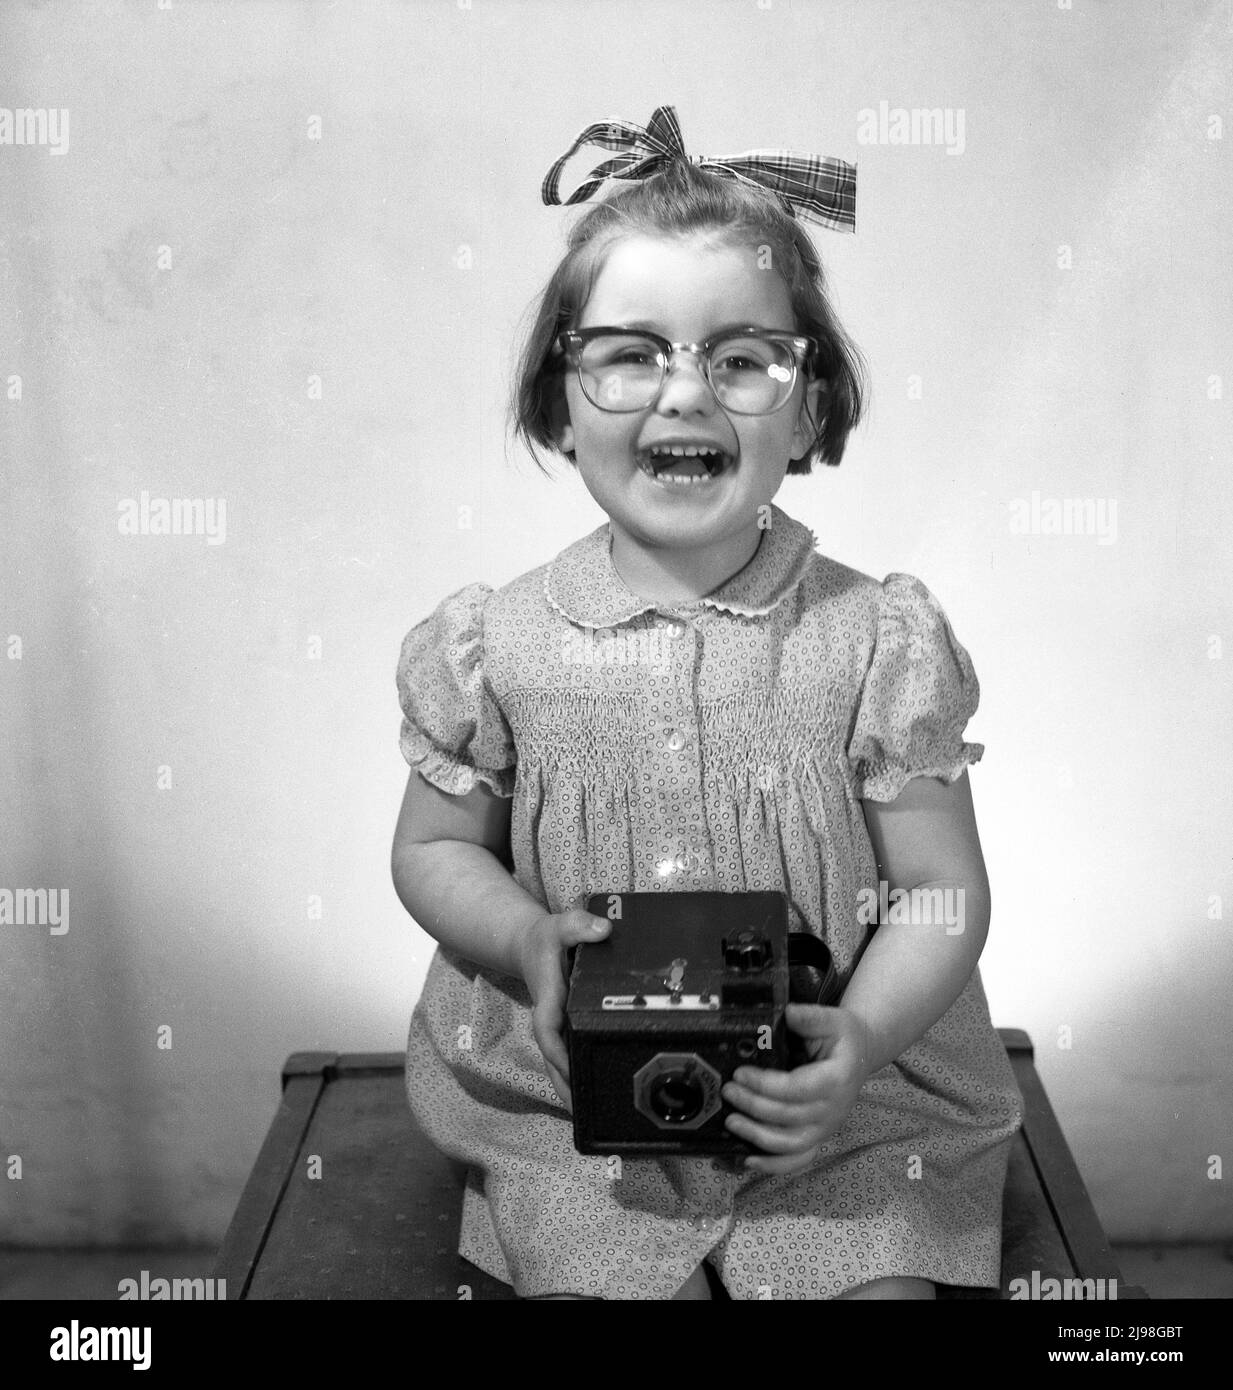 1963, historique, photo de studio, une jeune fille heureuse avec un grand sourire et un ruban dans ses cheveux assis sur un tabouret pour sa photo, portant les lunettes de sa mère et tenant un appareil photo de l'époque, un Conway box caméra de film, Angleterre, Royaume-Uni. Banque D'Images